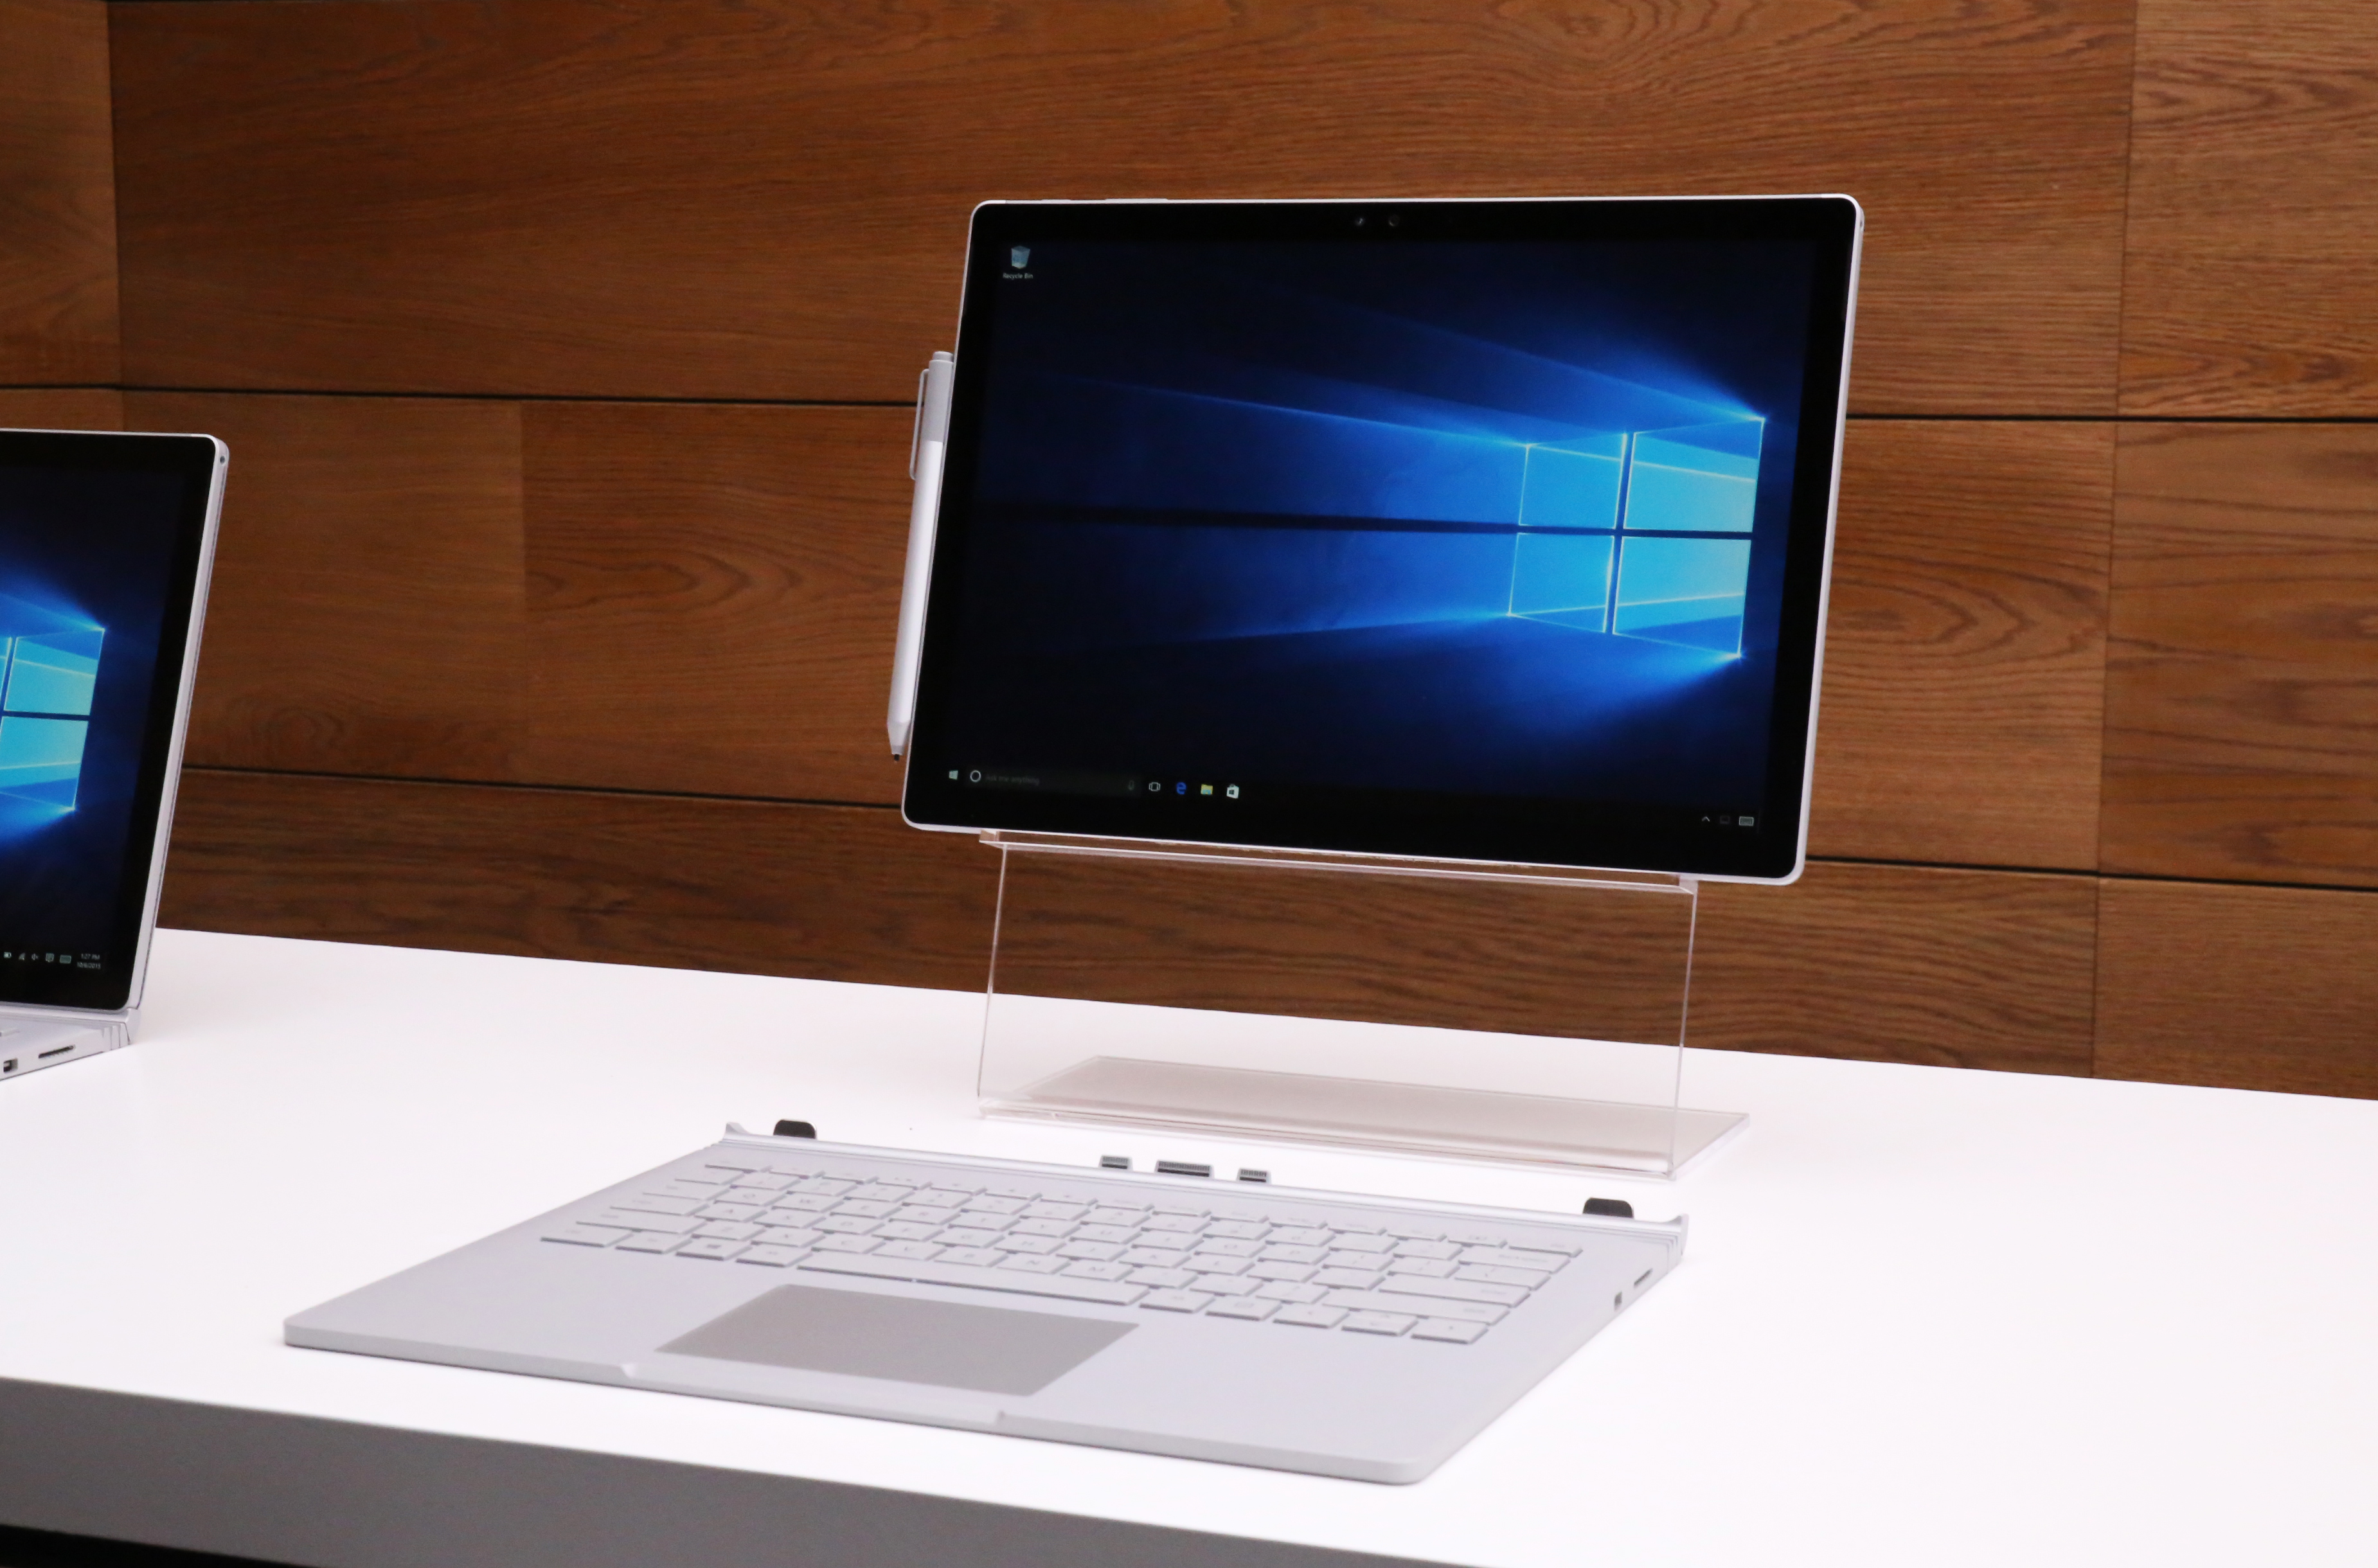 Microsoft Surface Book - lightweight laptop